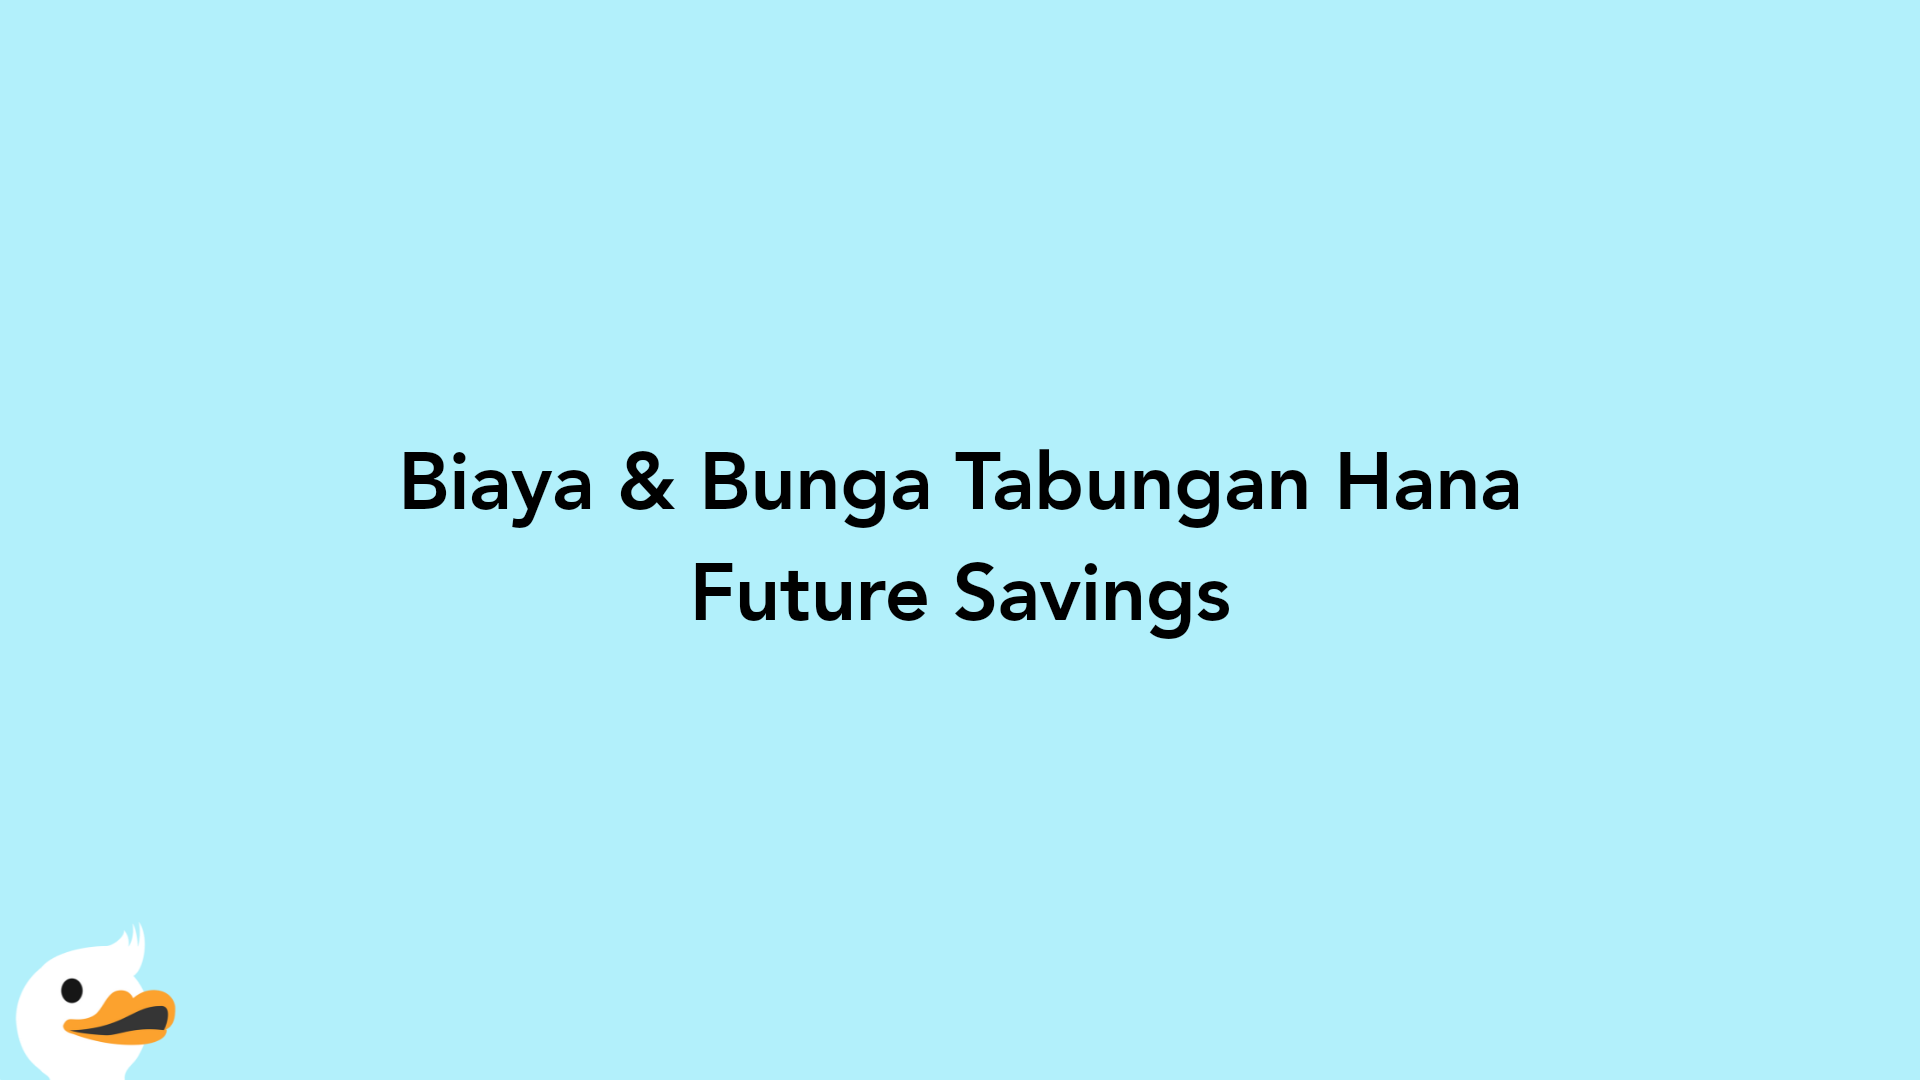 Biaya & Bunga Tabungan Hana Future Savings